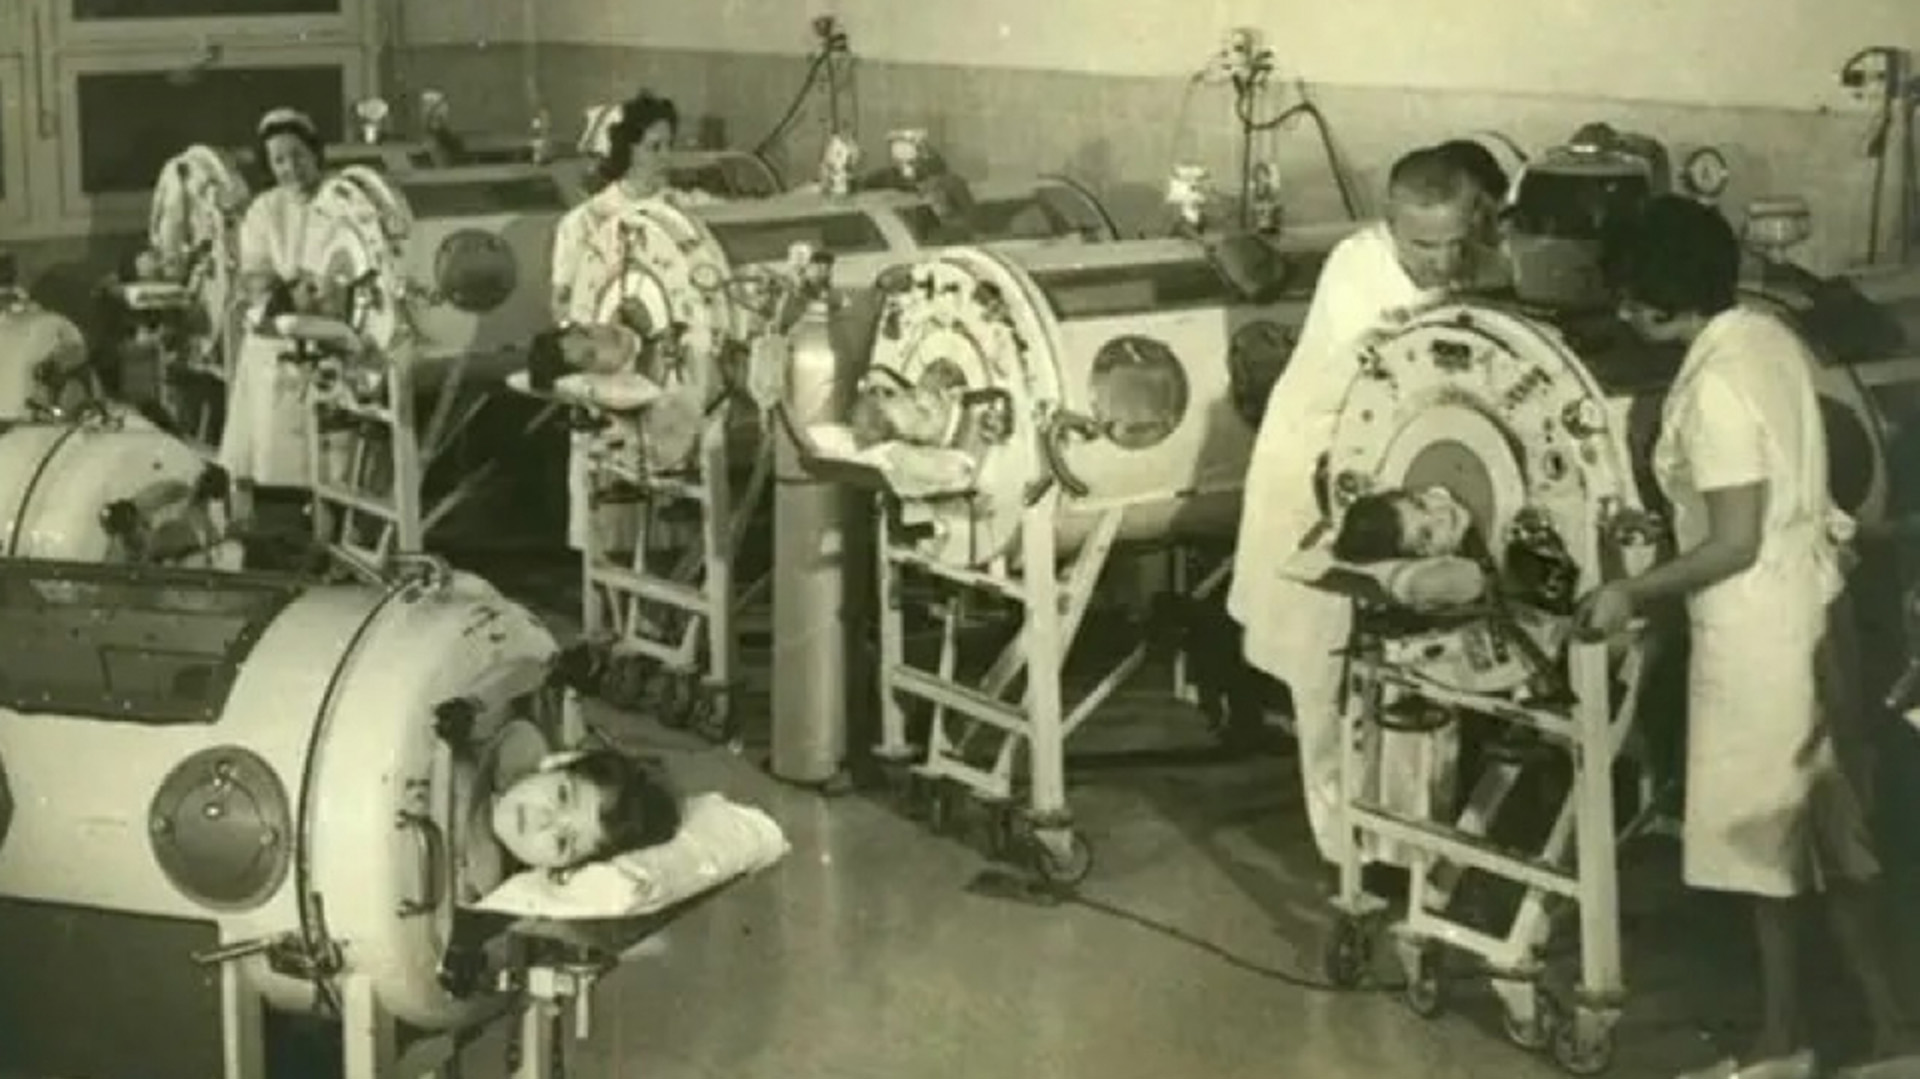 En los años cincuenta hubo diferentes epidemias de poliomielitis en el mundo. En Argentina, se creó el Hospital Ferrer en Ciudad de Buenos Aires para atender a los chicos afectados, y el doctor Aquiles Roncoroni impulsó los cuidados intensivos (AGN)